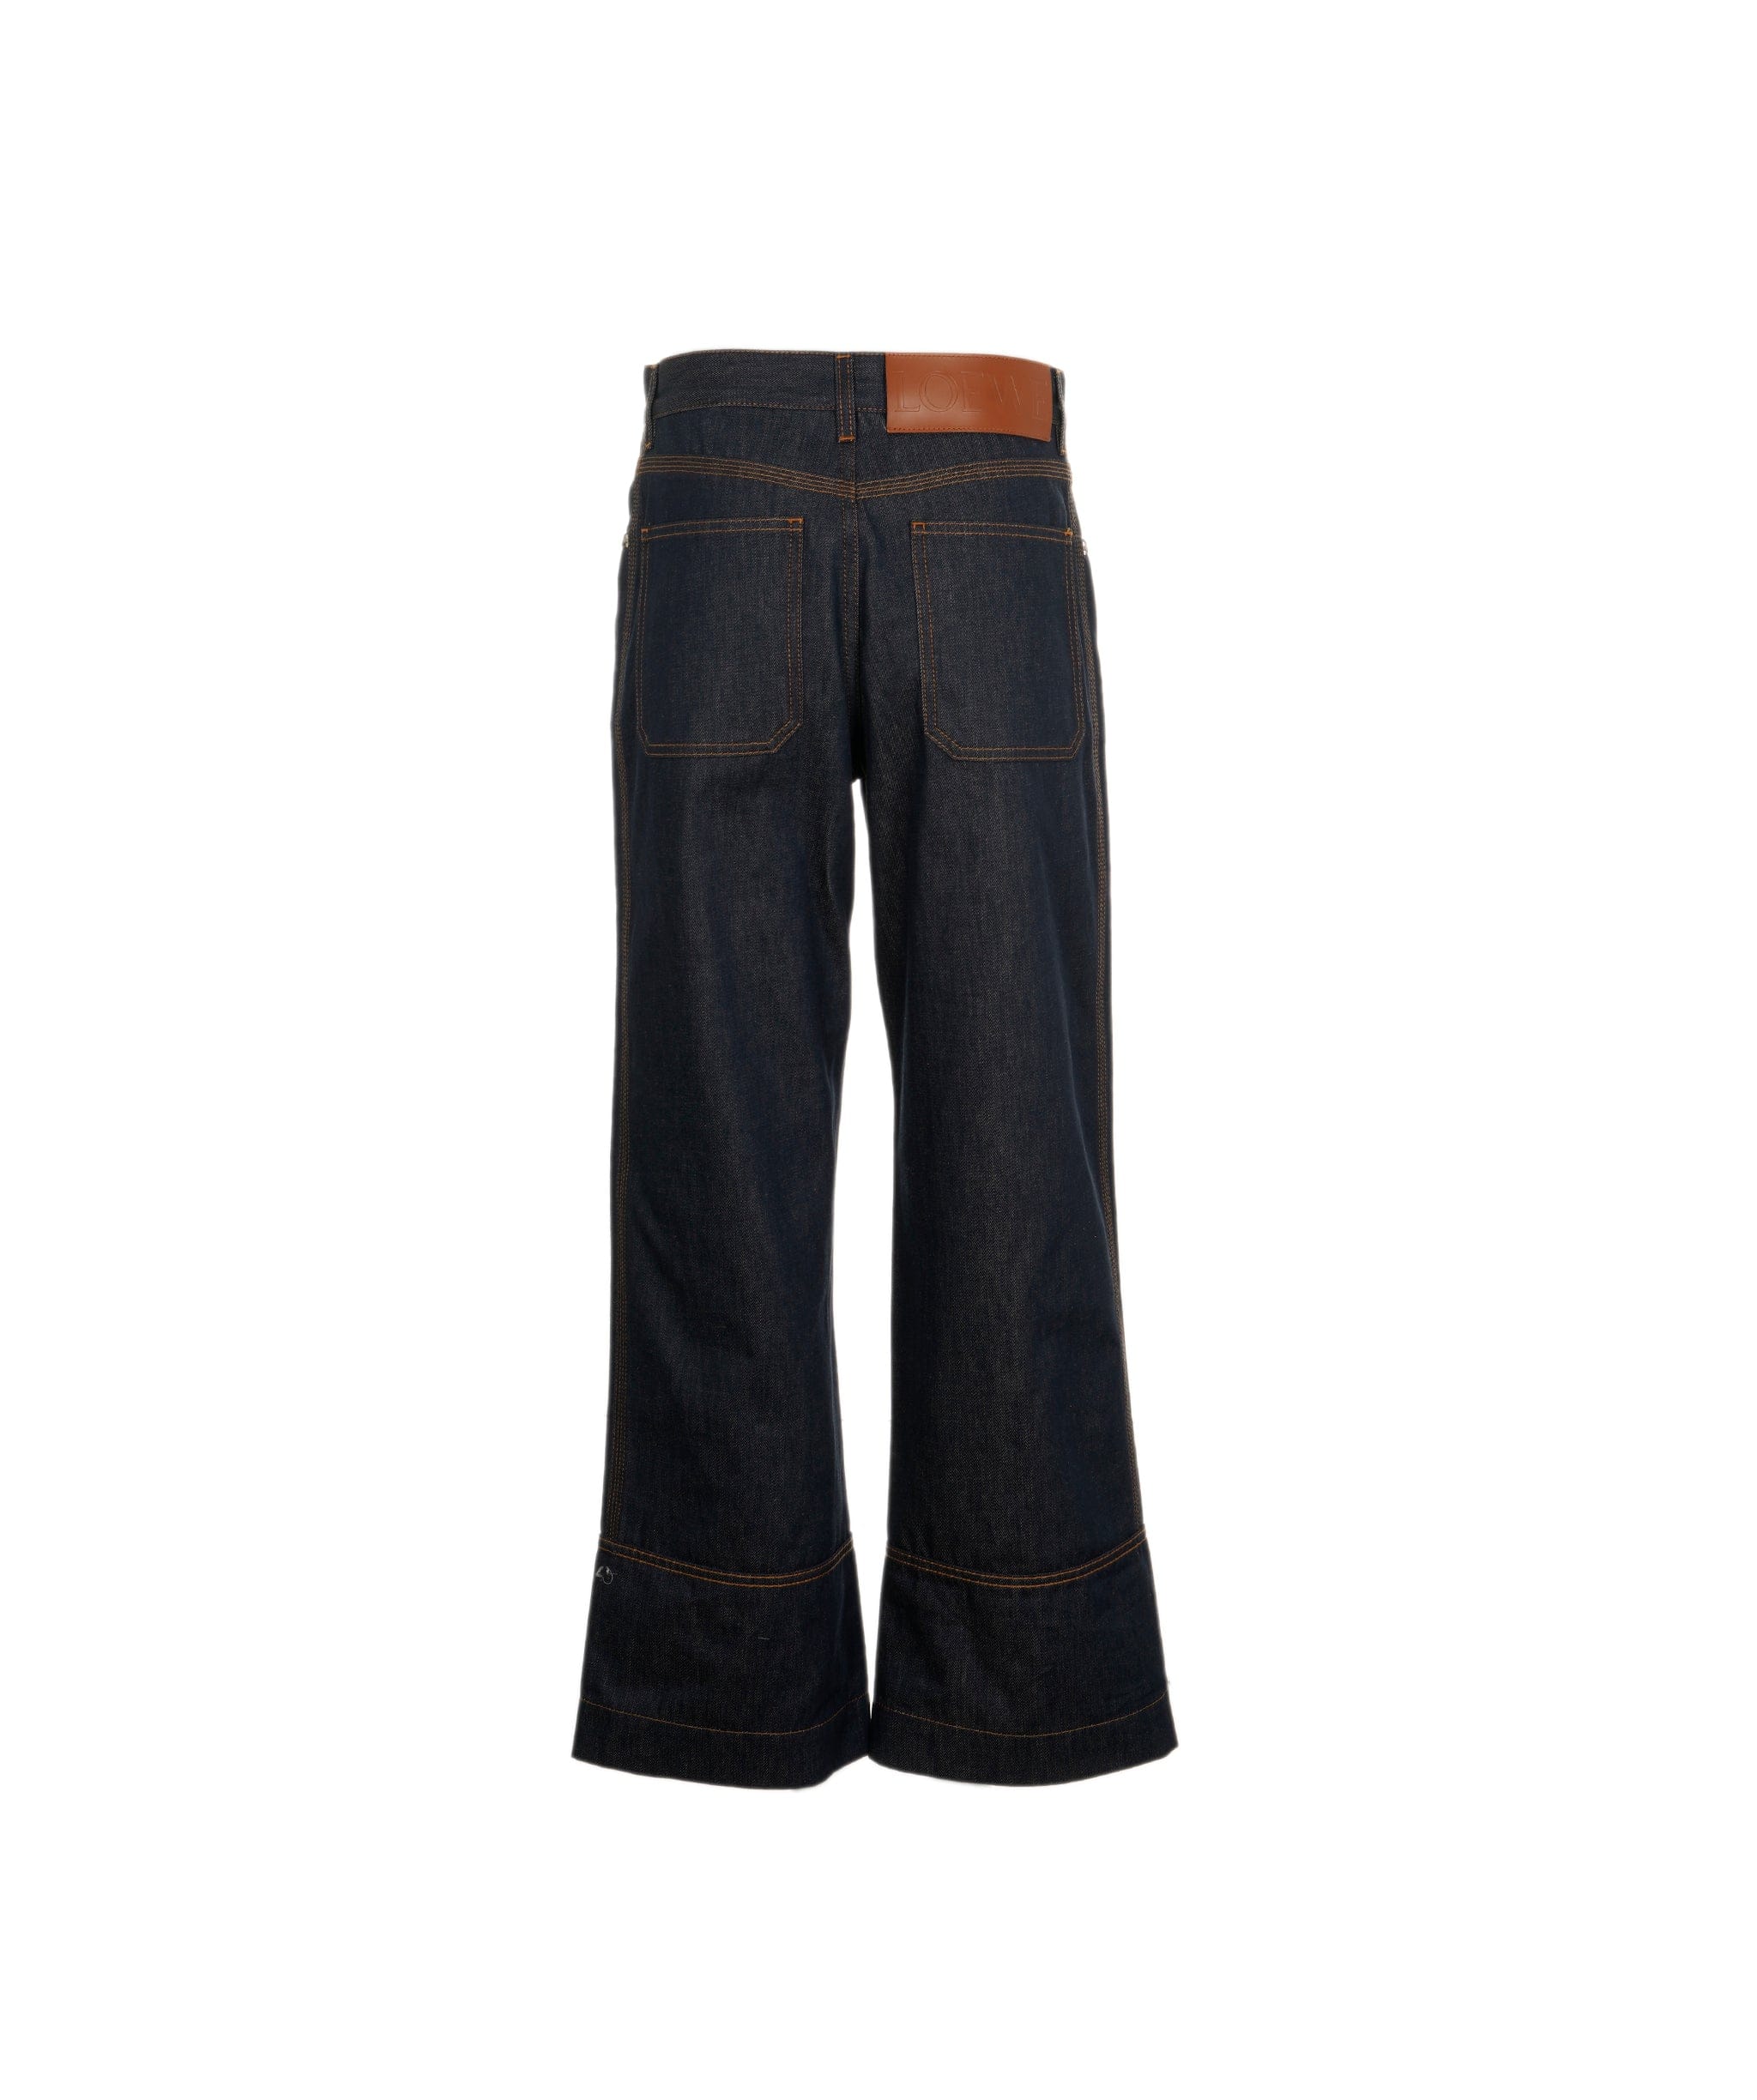 Loewe Loewe denim jeans ALC0602